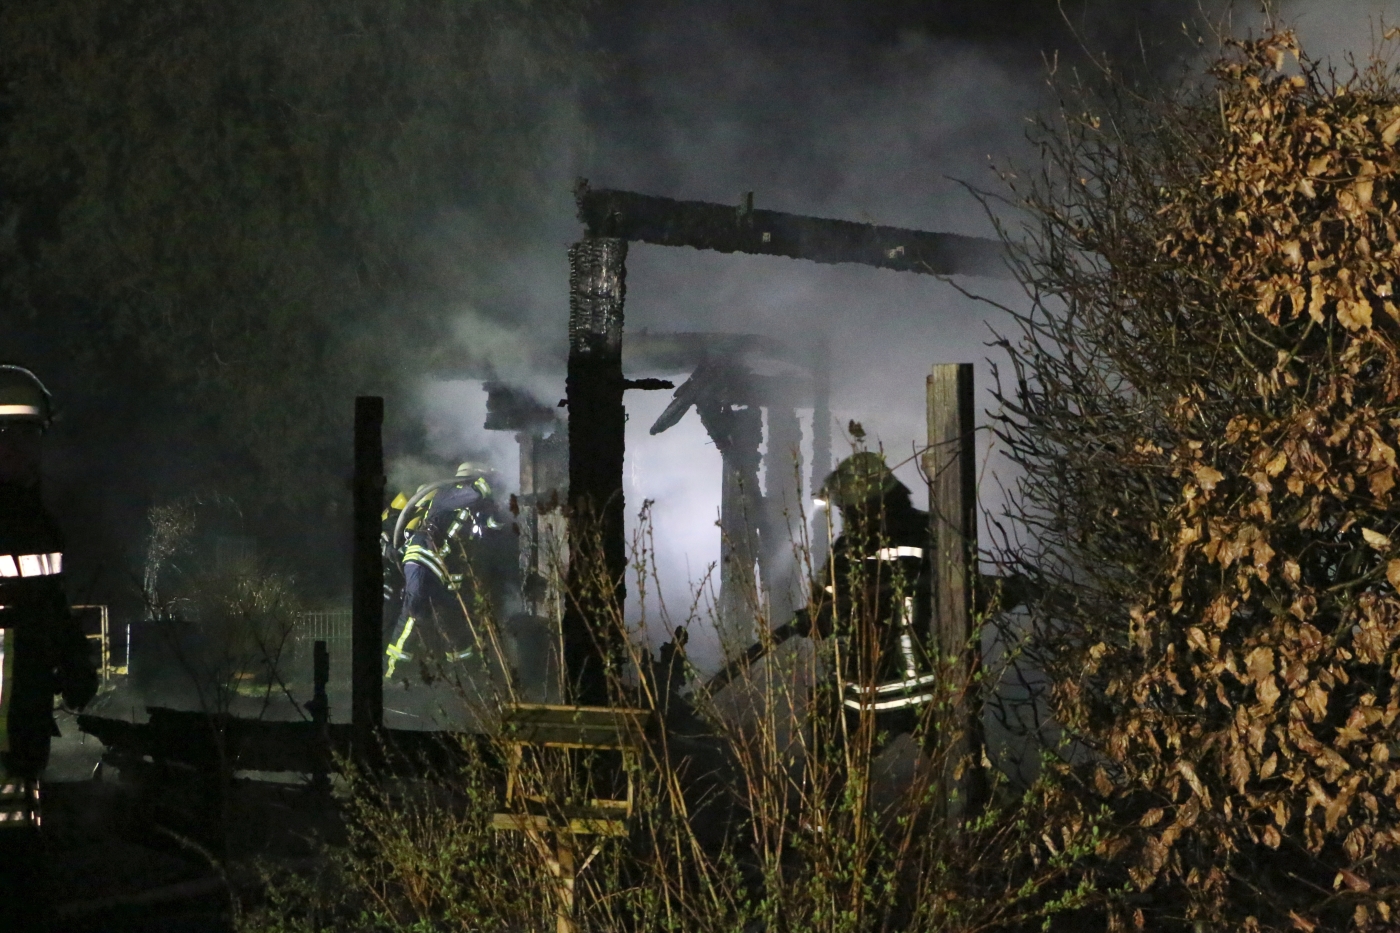 Holzhaus brennt auf Campingplatz in Melle ab